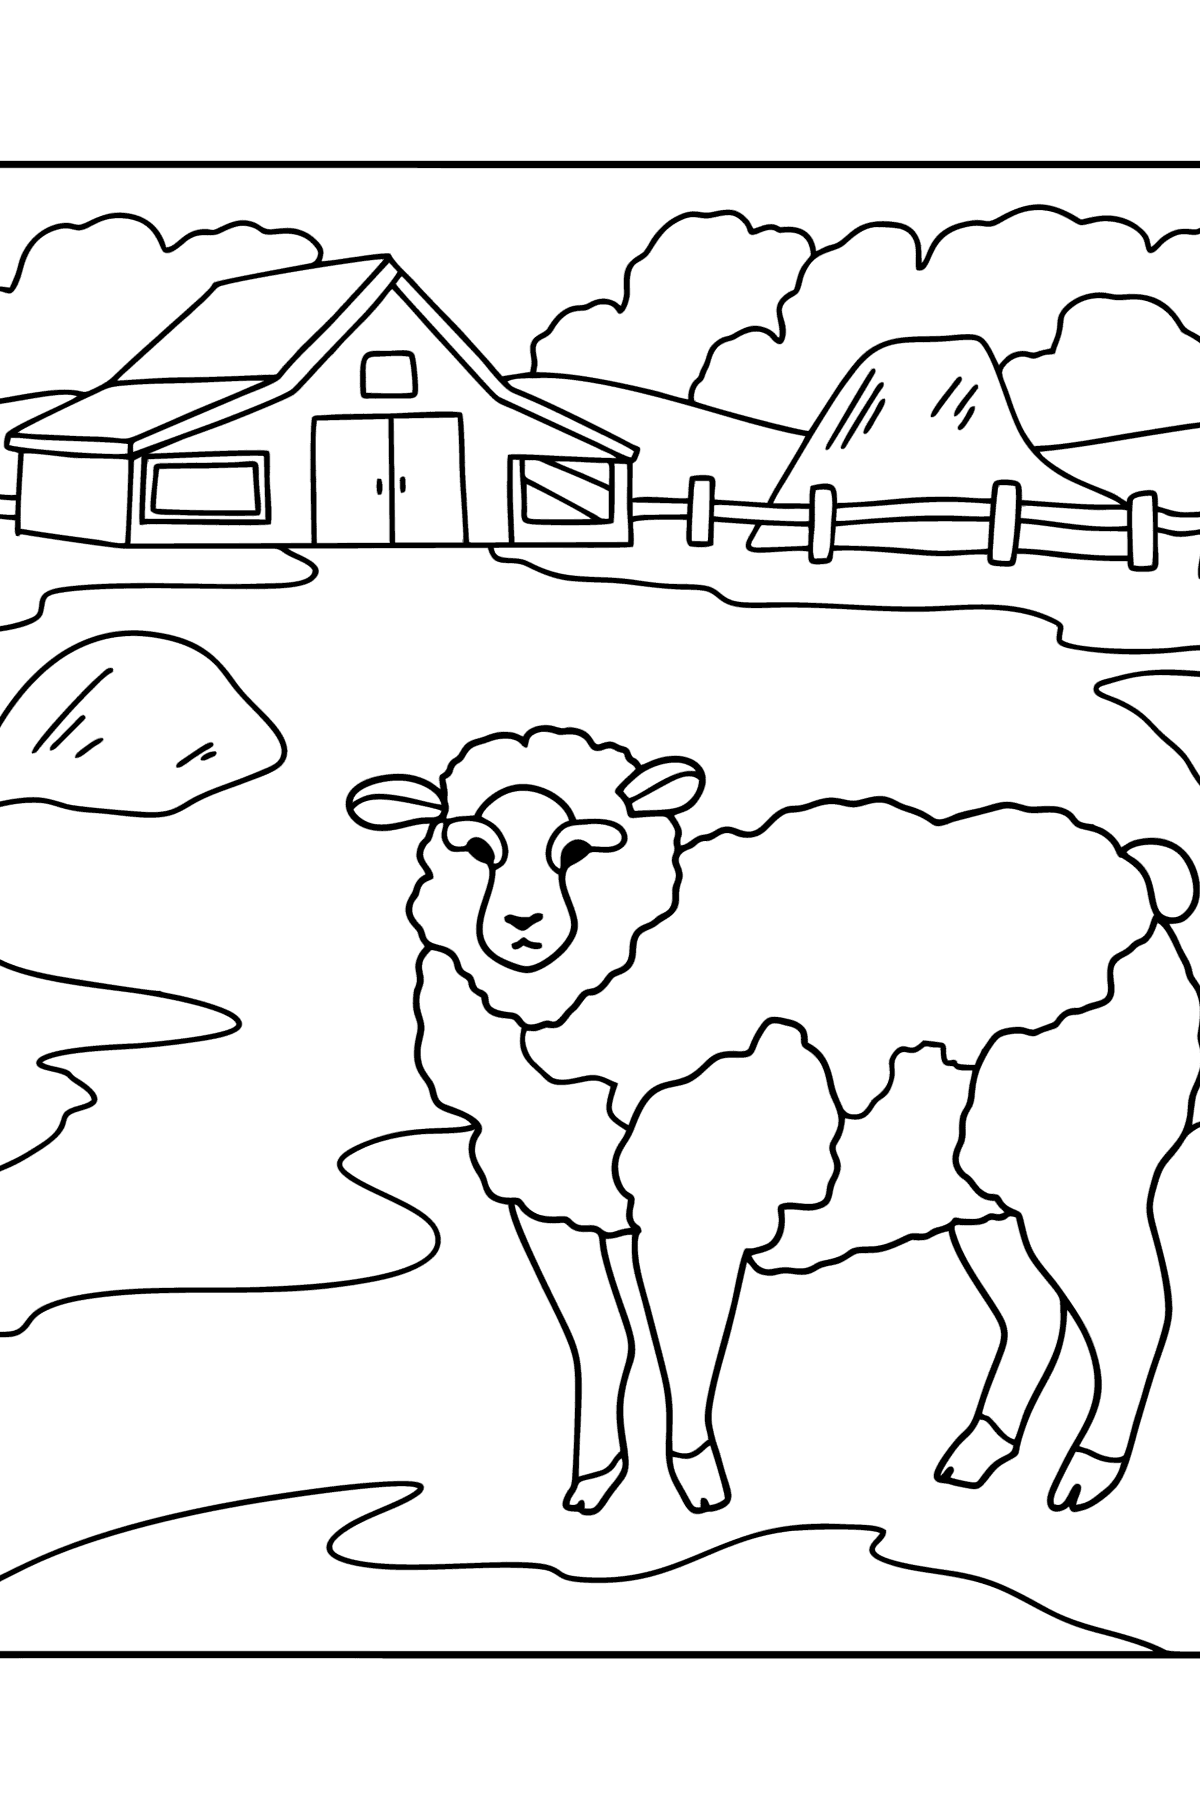 Раскраска Ферма - Картинки для Детей